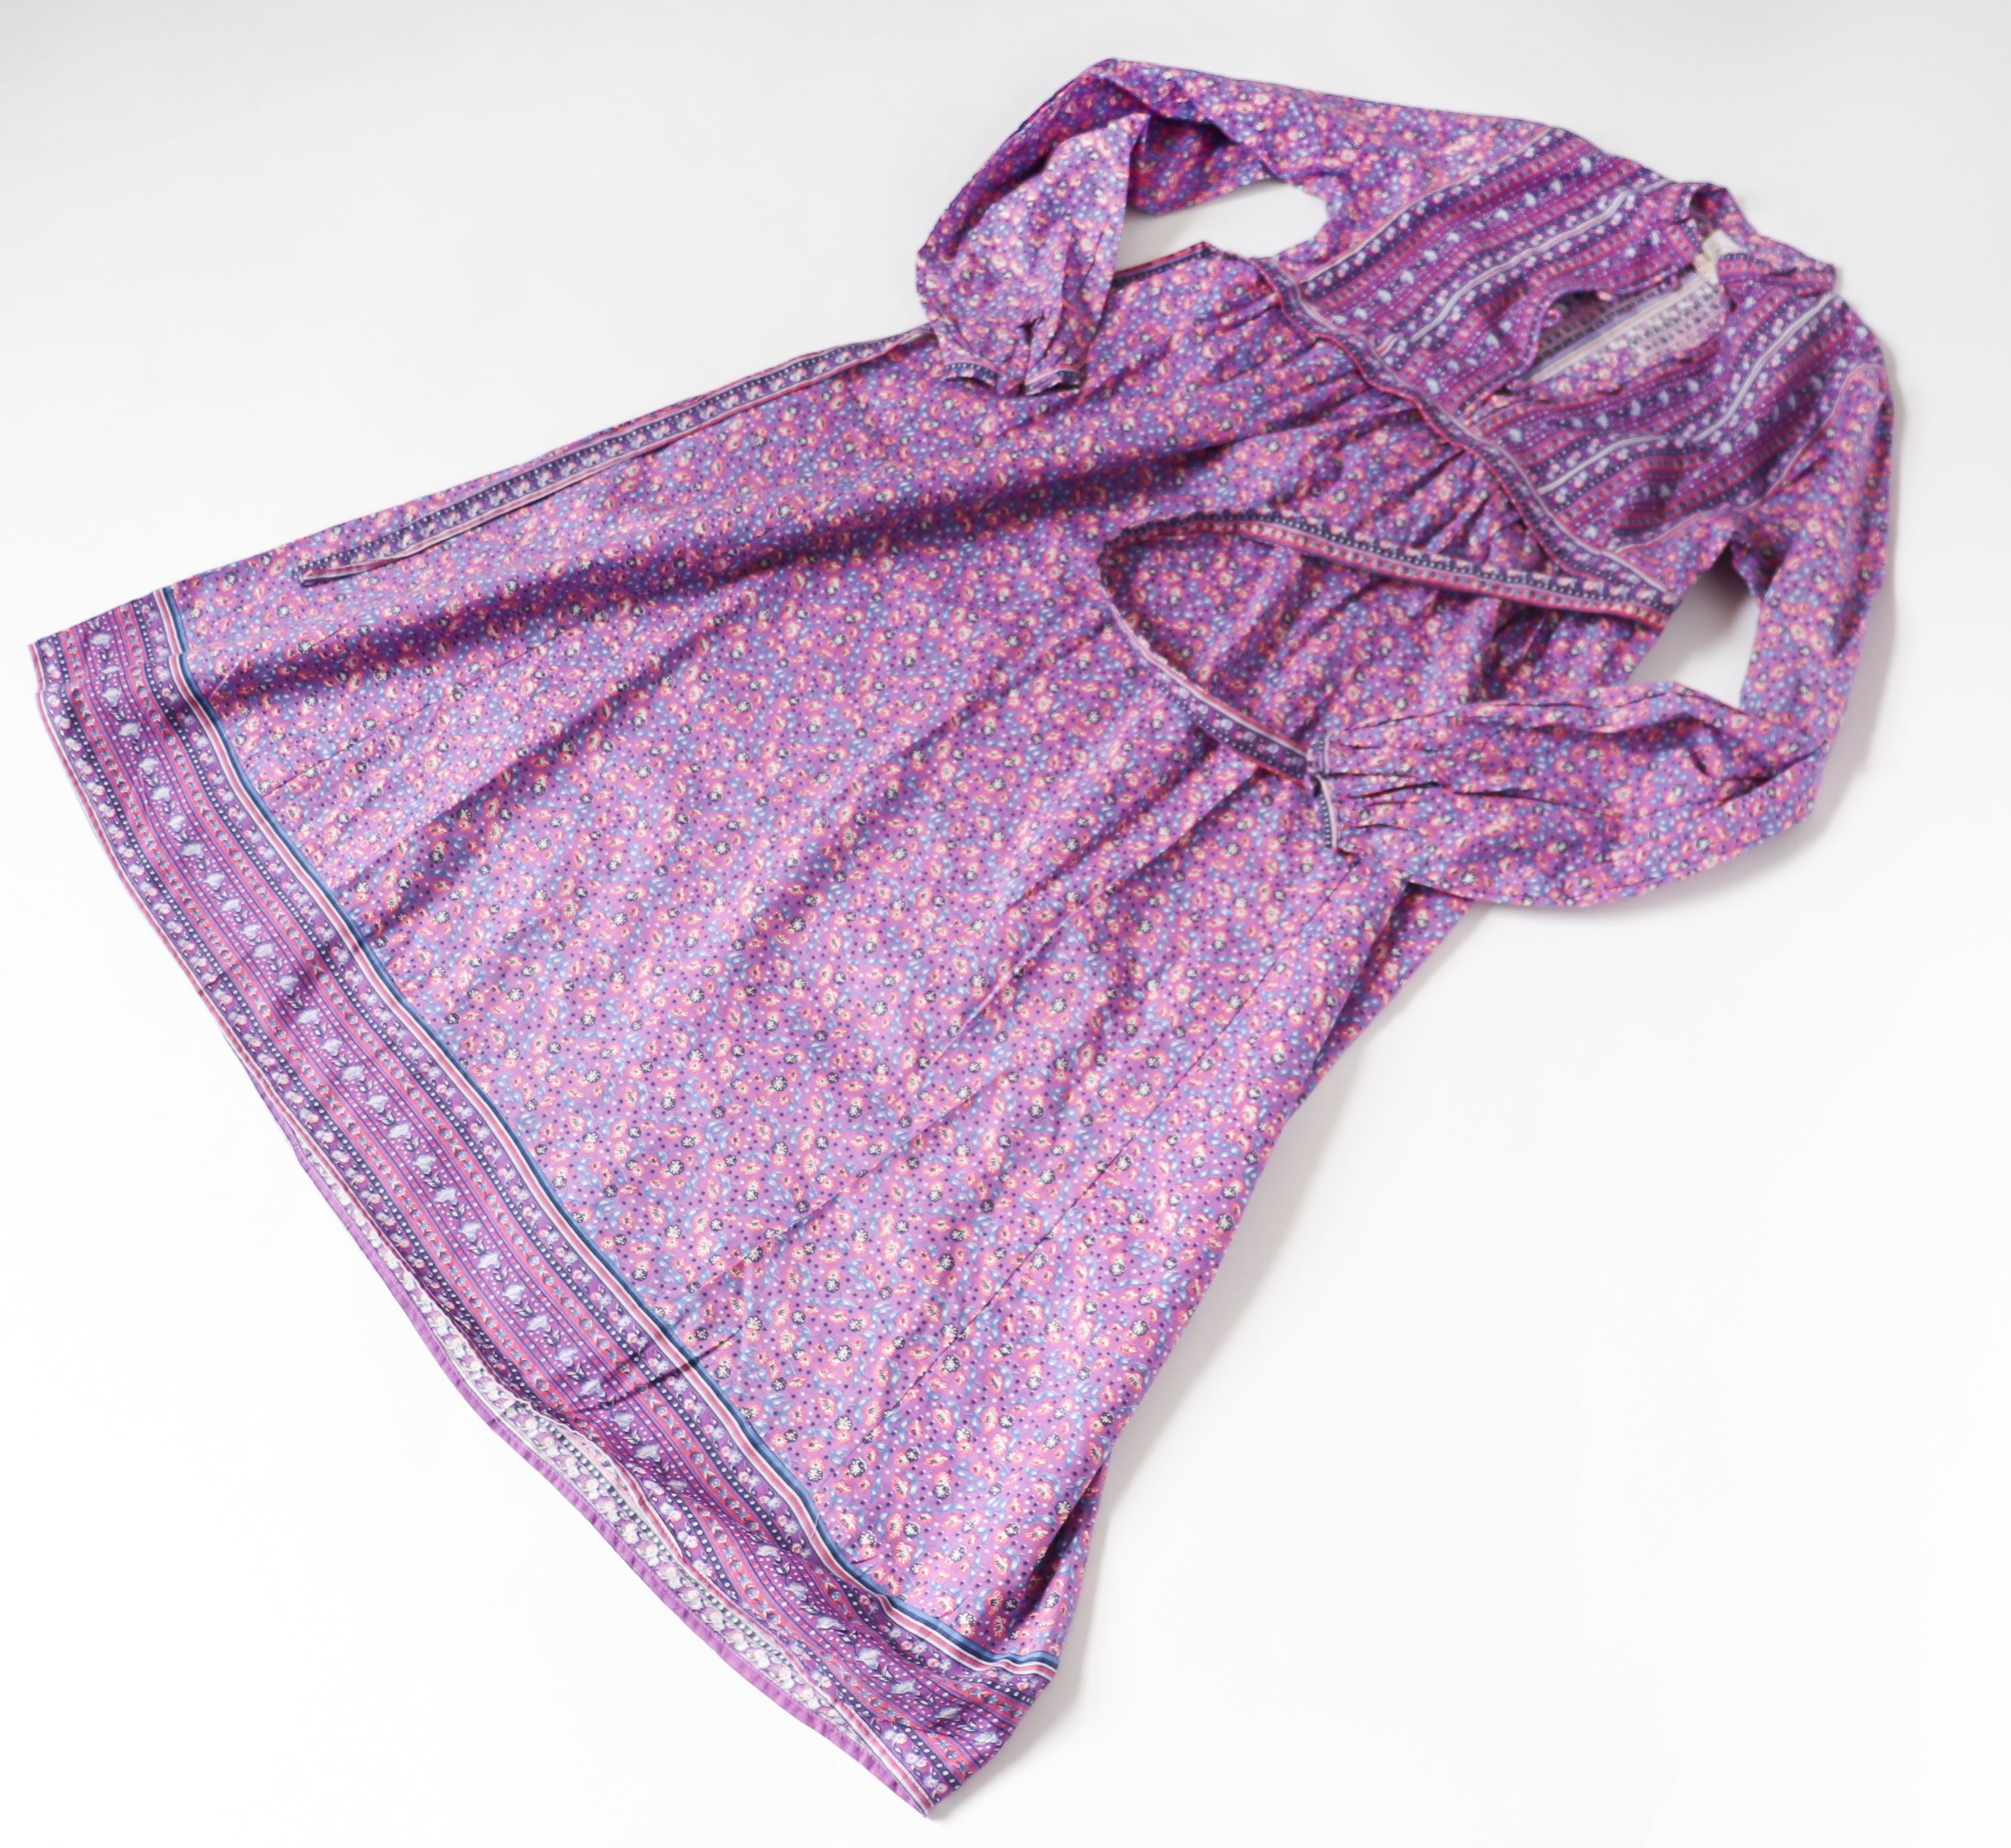 Vintage Block Print Cotton Dress - Empire Line - Purple - Fit S / M or UK 10-12